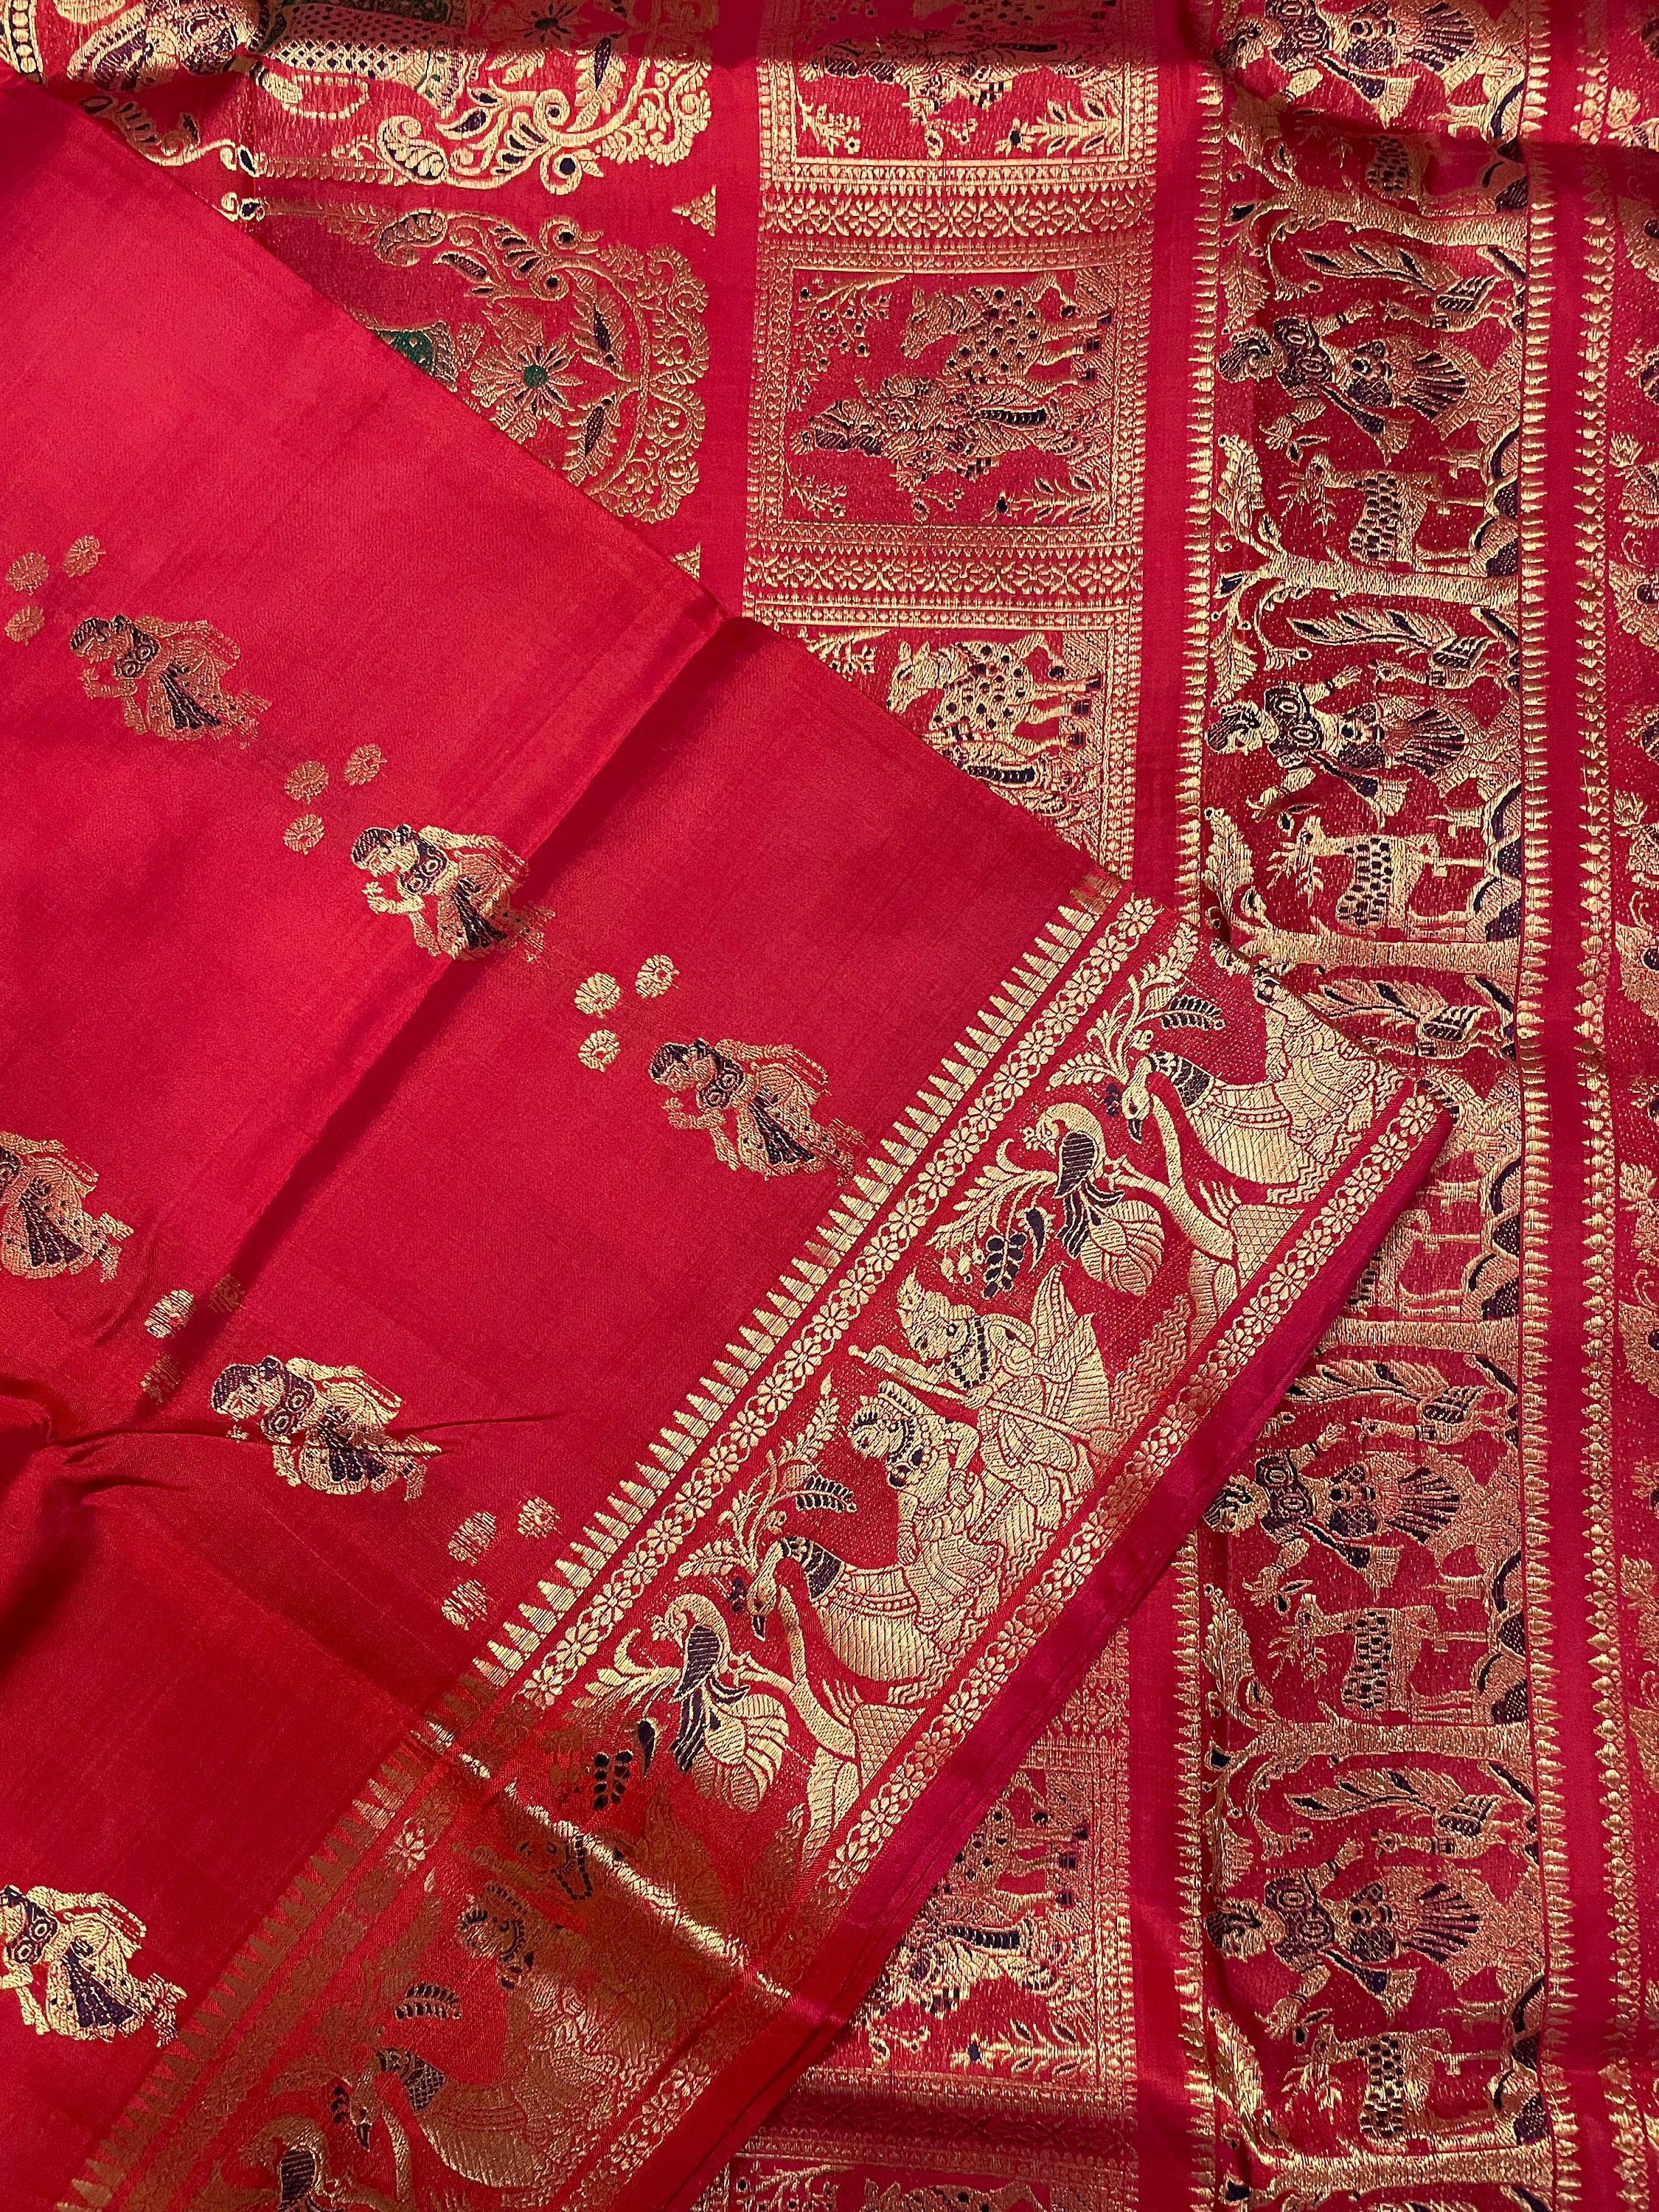 Burgundy/Red Meenakari Swarnachuri Baluchari Saree on Pure Bishnupuri Silk